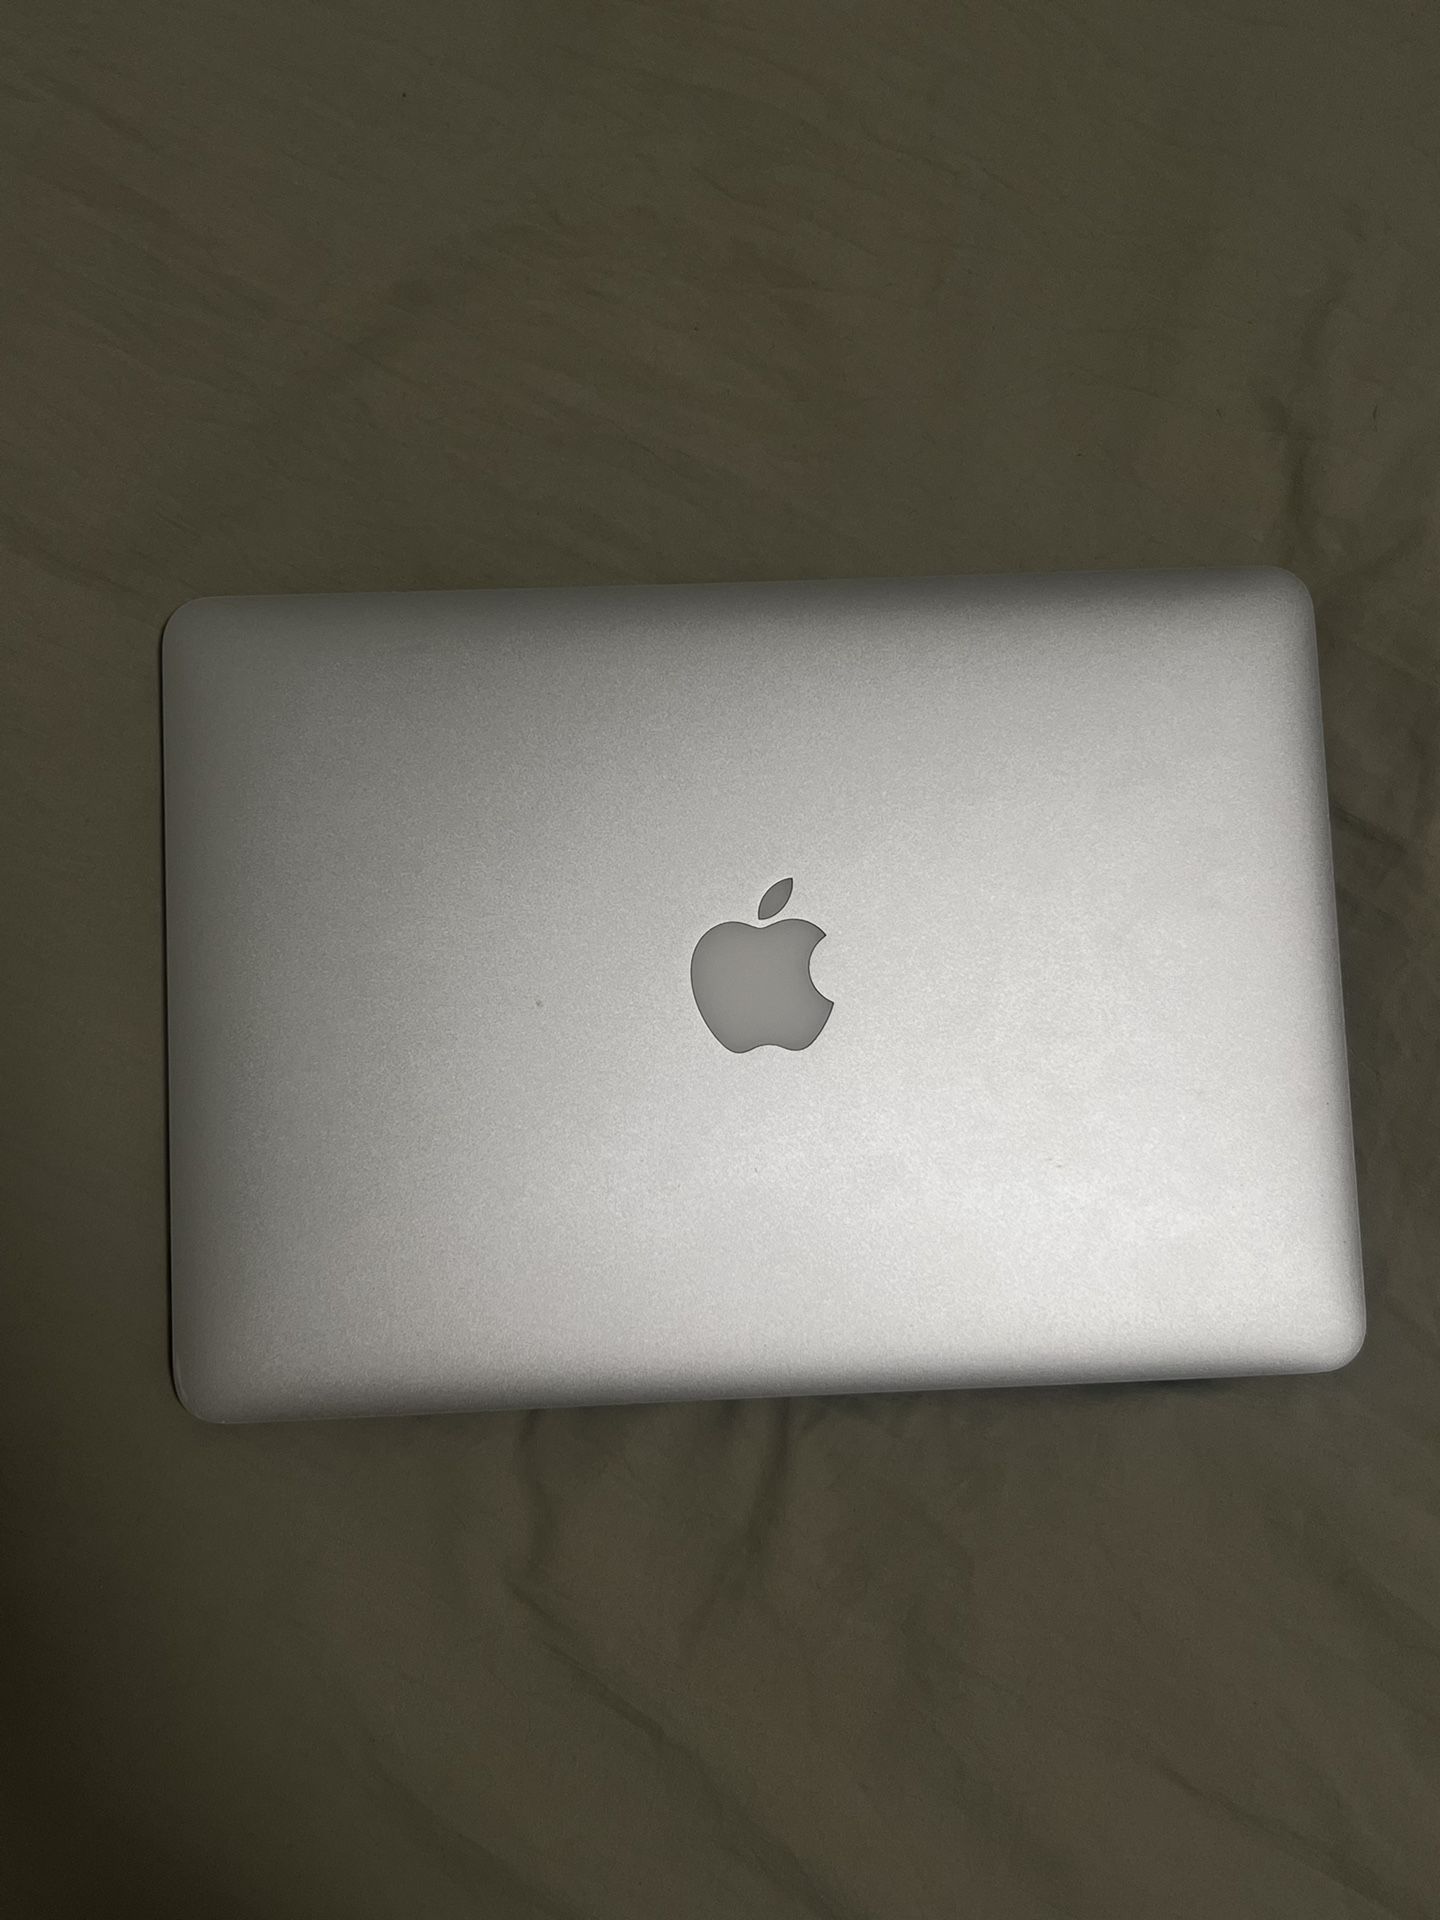 MacBook Pro 13-inch